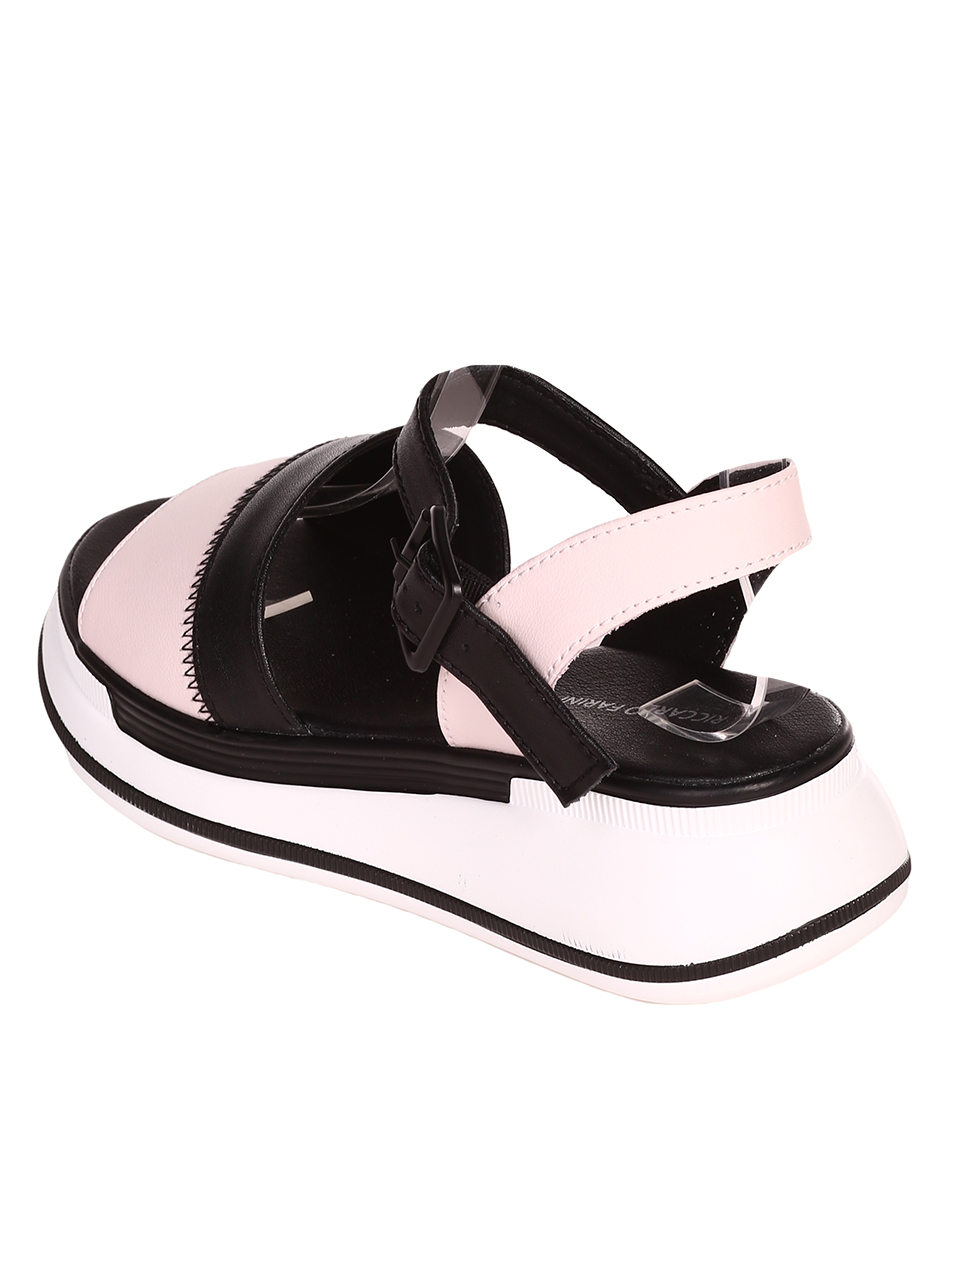 Ежедневни дамски сандали на платформа от естествена кожа 4AF-23165 pink/black